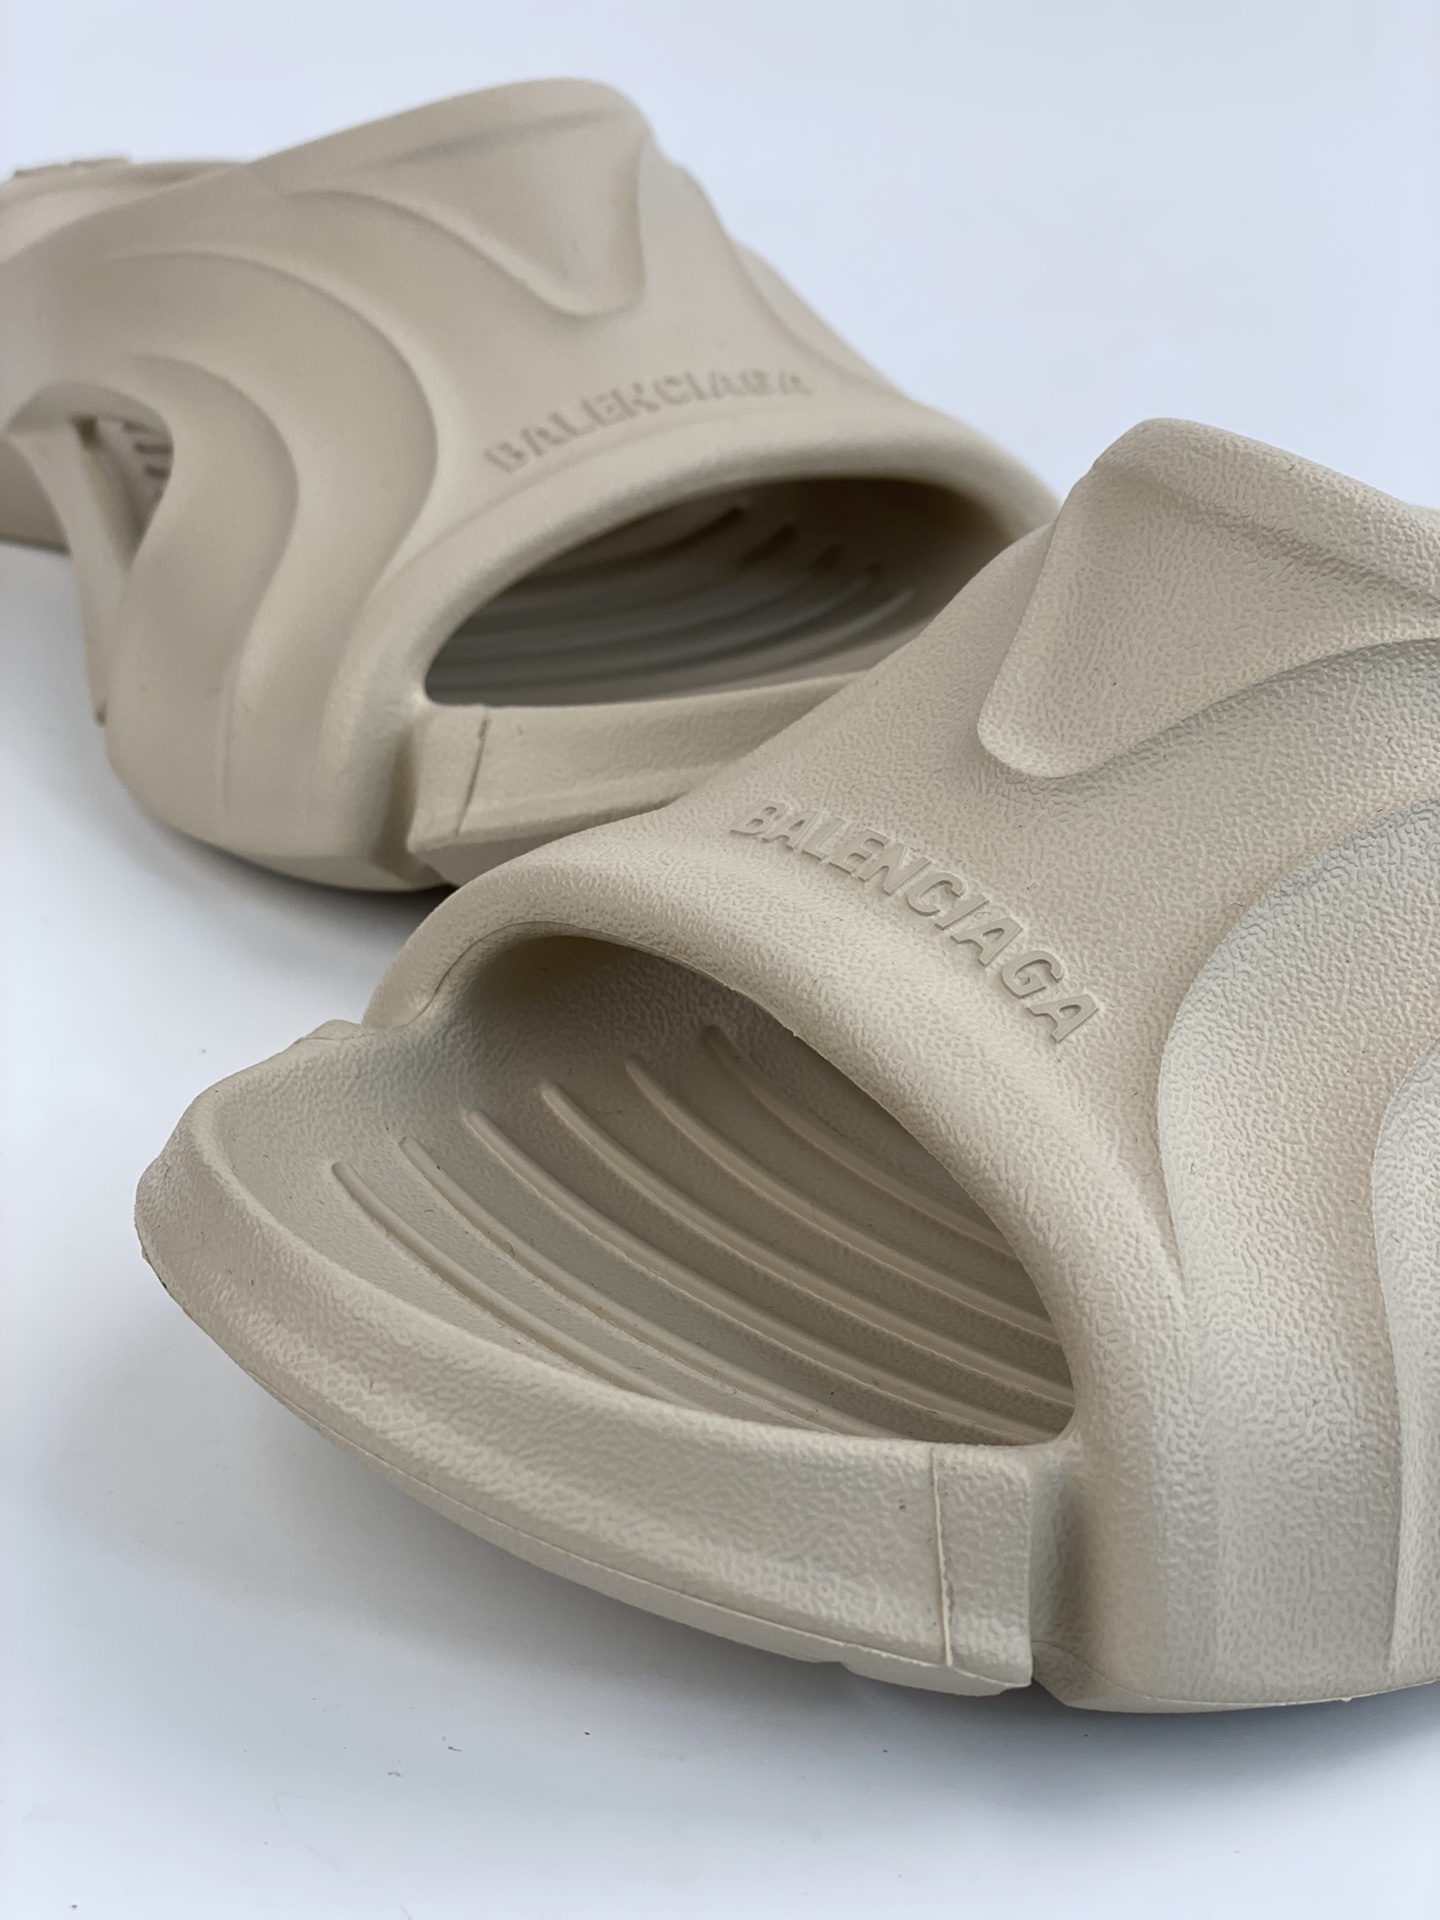 BALENCIAGA Mold Rubber Slide Sandals Series